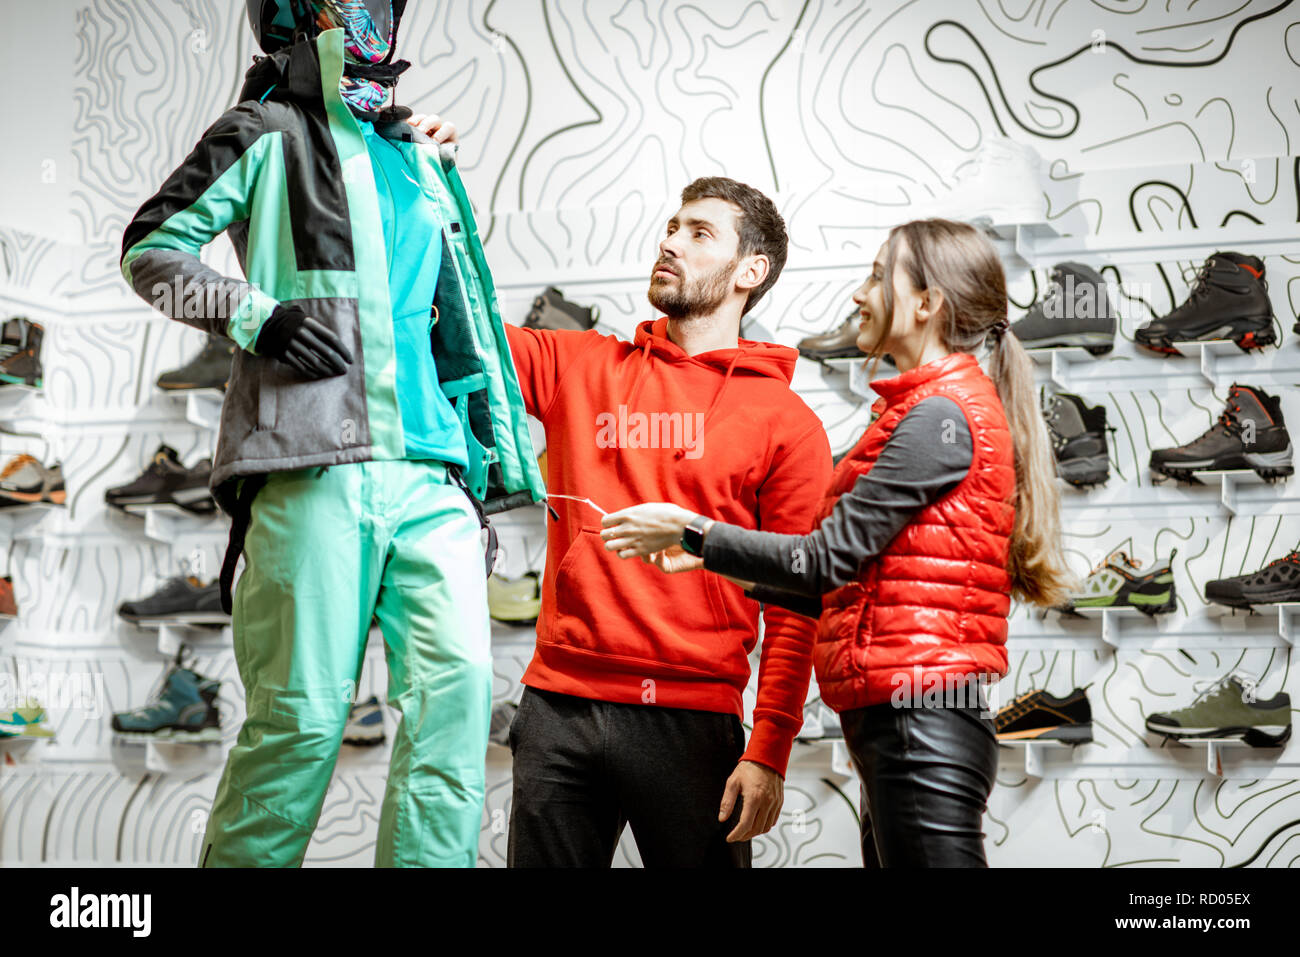 Allegro giovane in rosso abbigliamento sportivo scegliendo l'usura di sci cerca su dummyatn i moderni sport shop Foto Stock